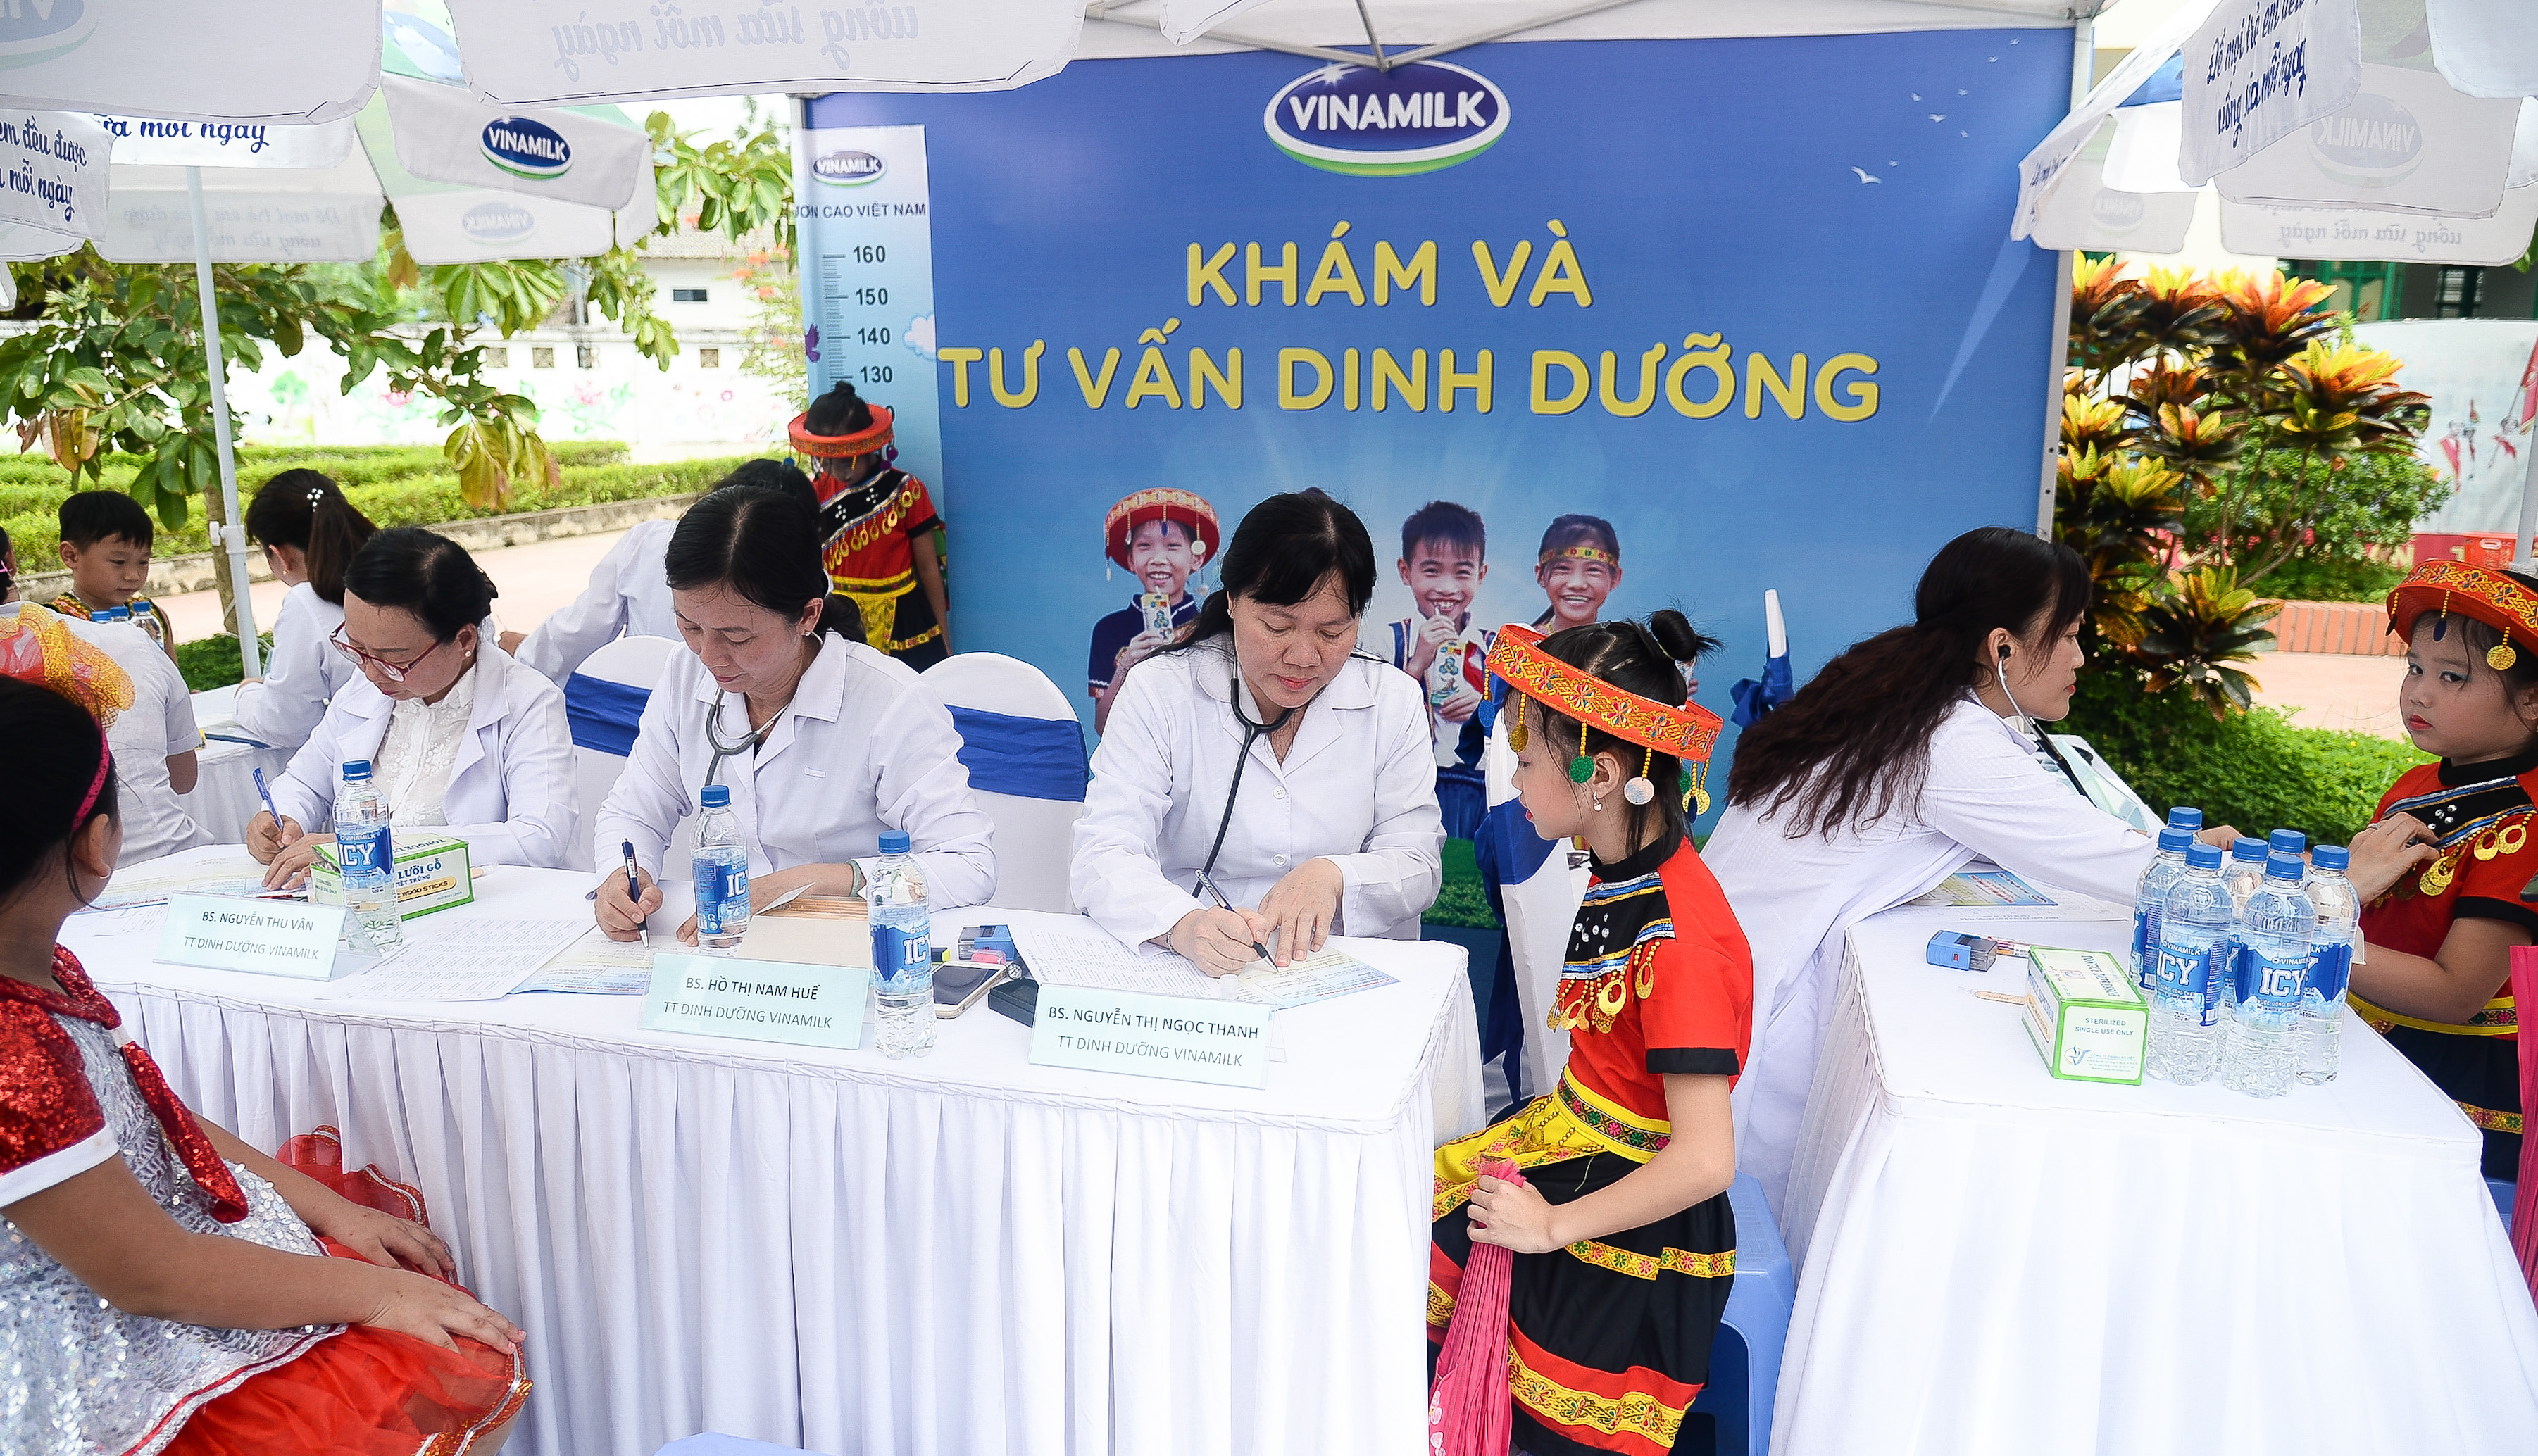 Quỹ sữa Vươn Cao Việt Nam: Nỗ lực vì sứ mệnh “Để mọi trẻ em đều được uống sữa mỗi ngày”